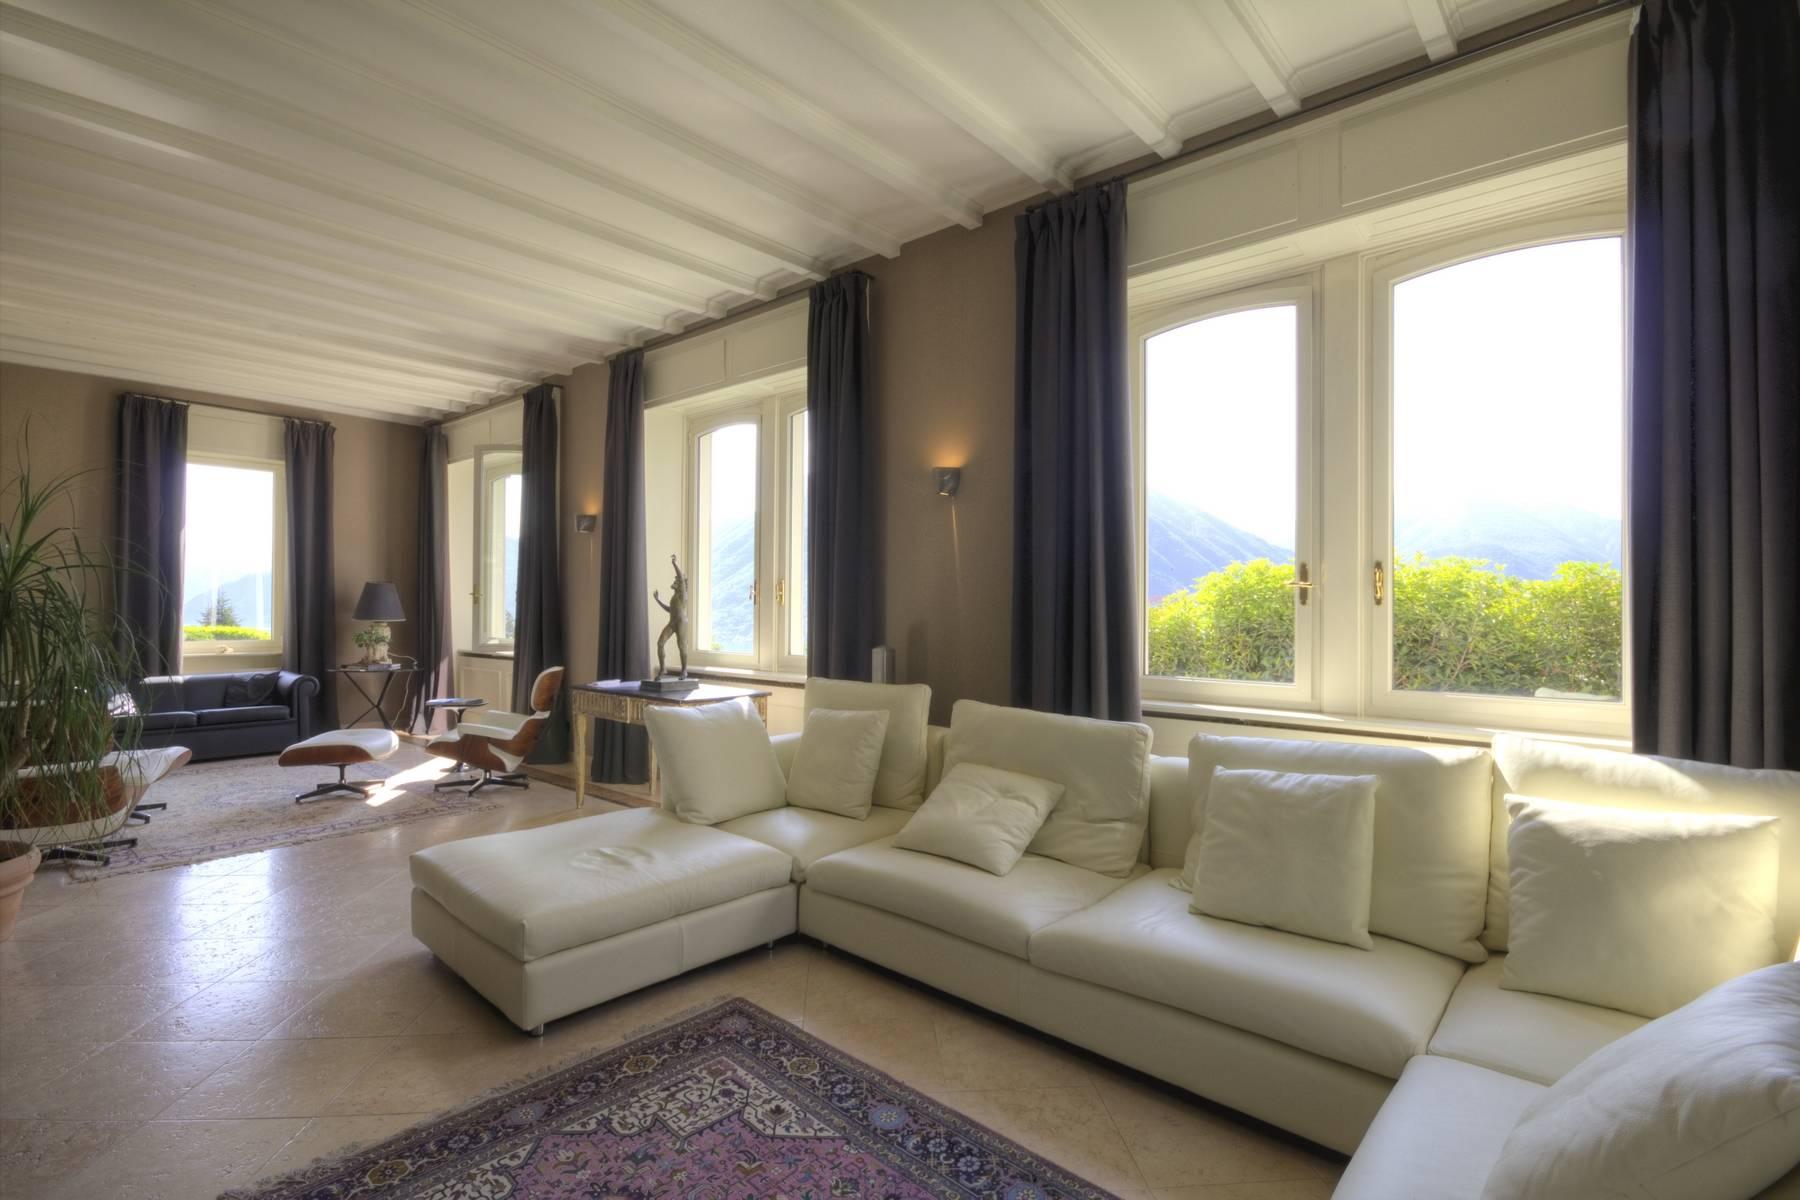 Villa Luminosa - An illustrious estate overlooking Lake Como - 19